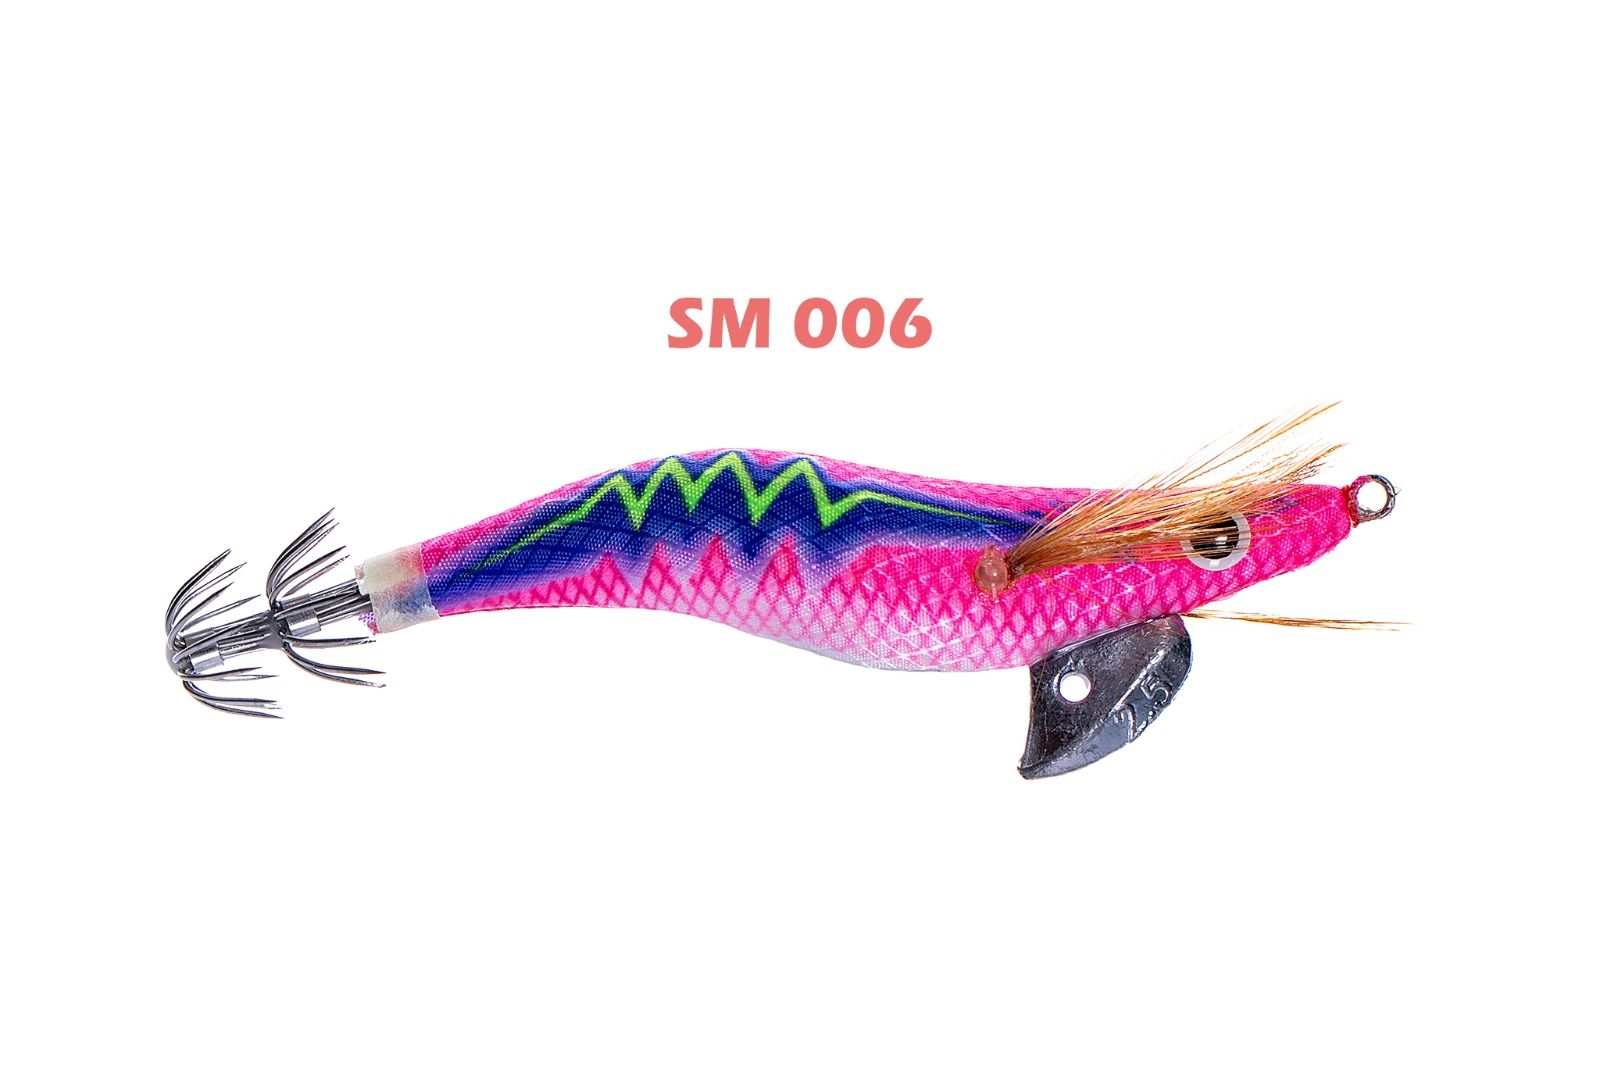 Pandora Squid Master SM #2.5 10 Cm 13 Gr